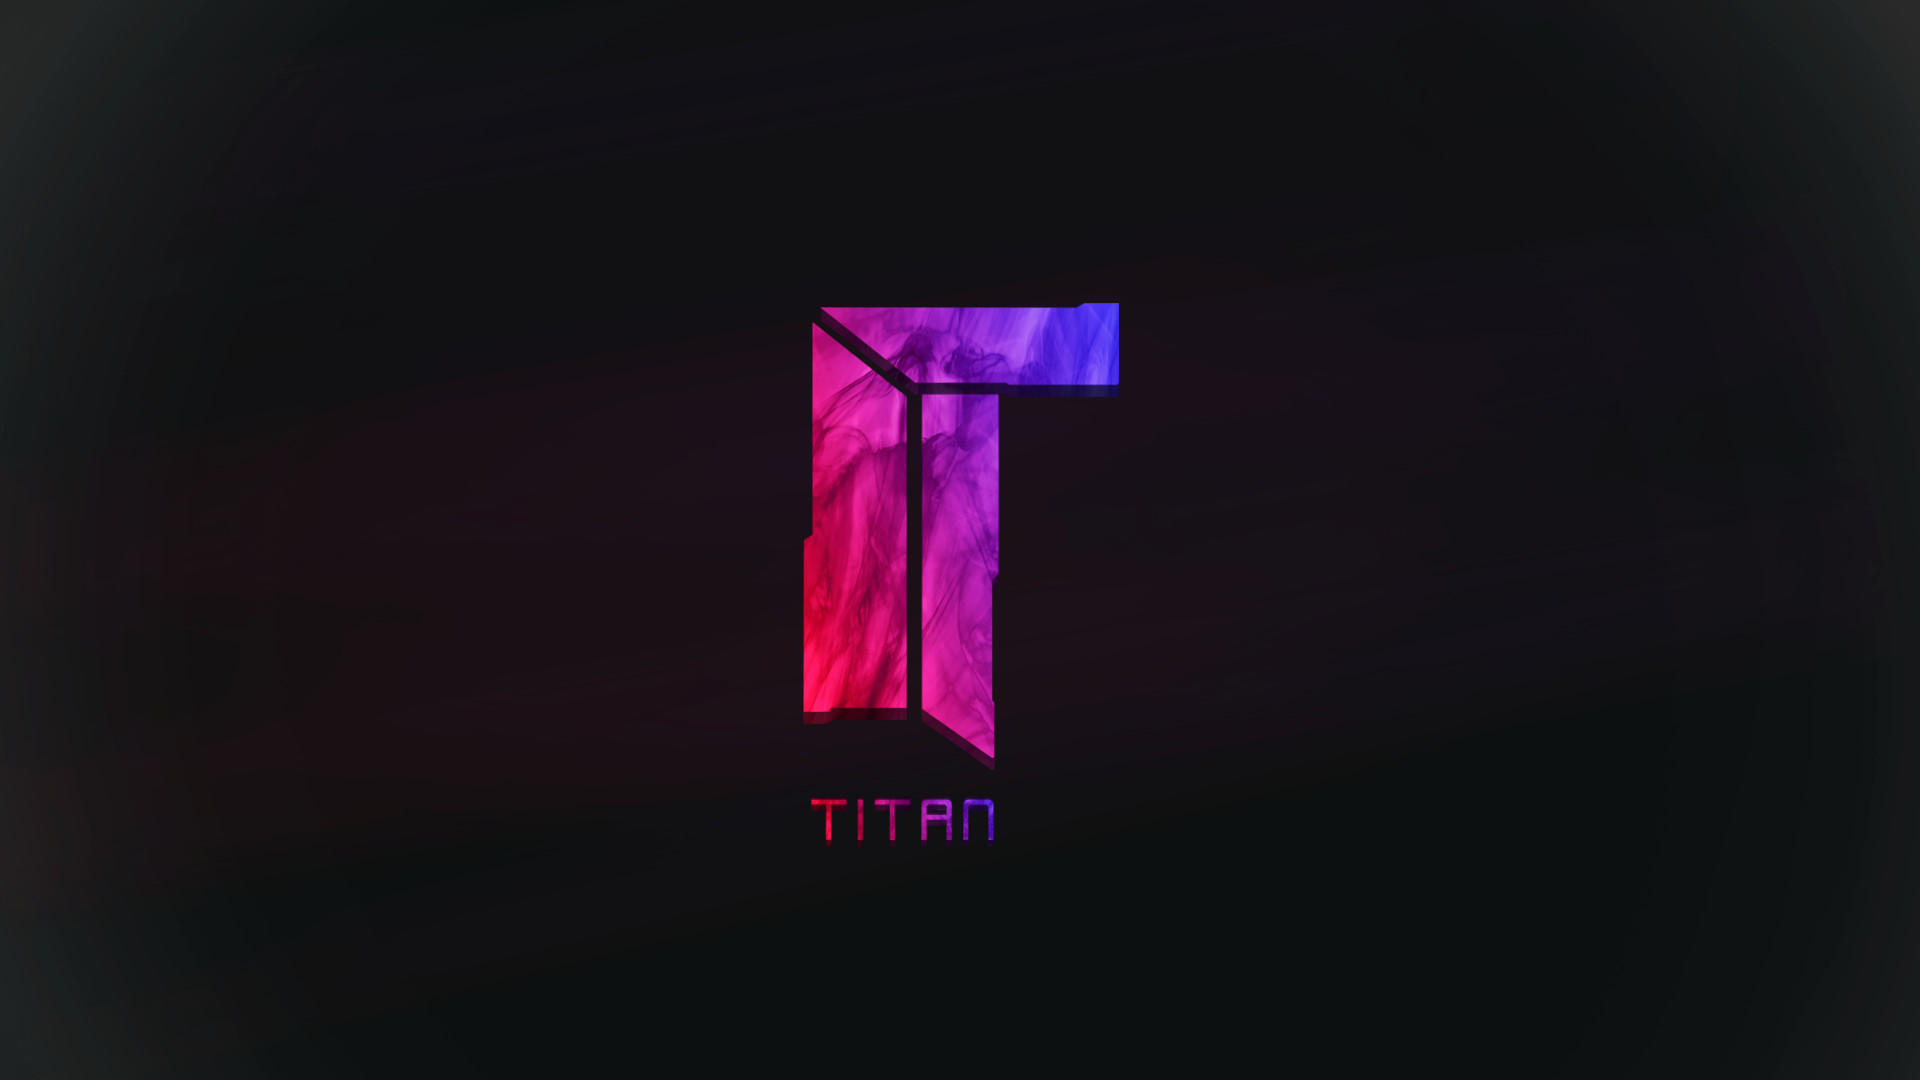 56+] Titan CS GO Wallpaper - WallpaperSafari